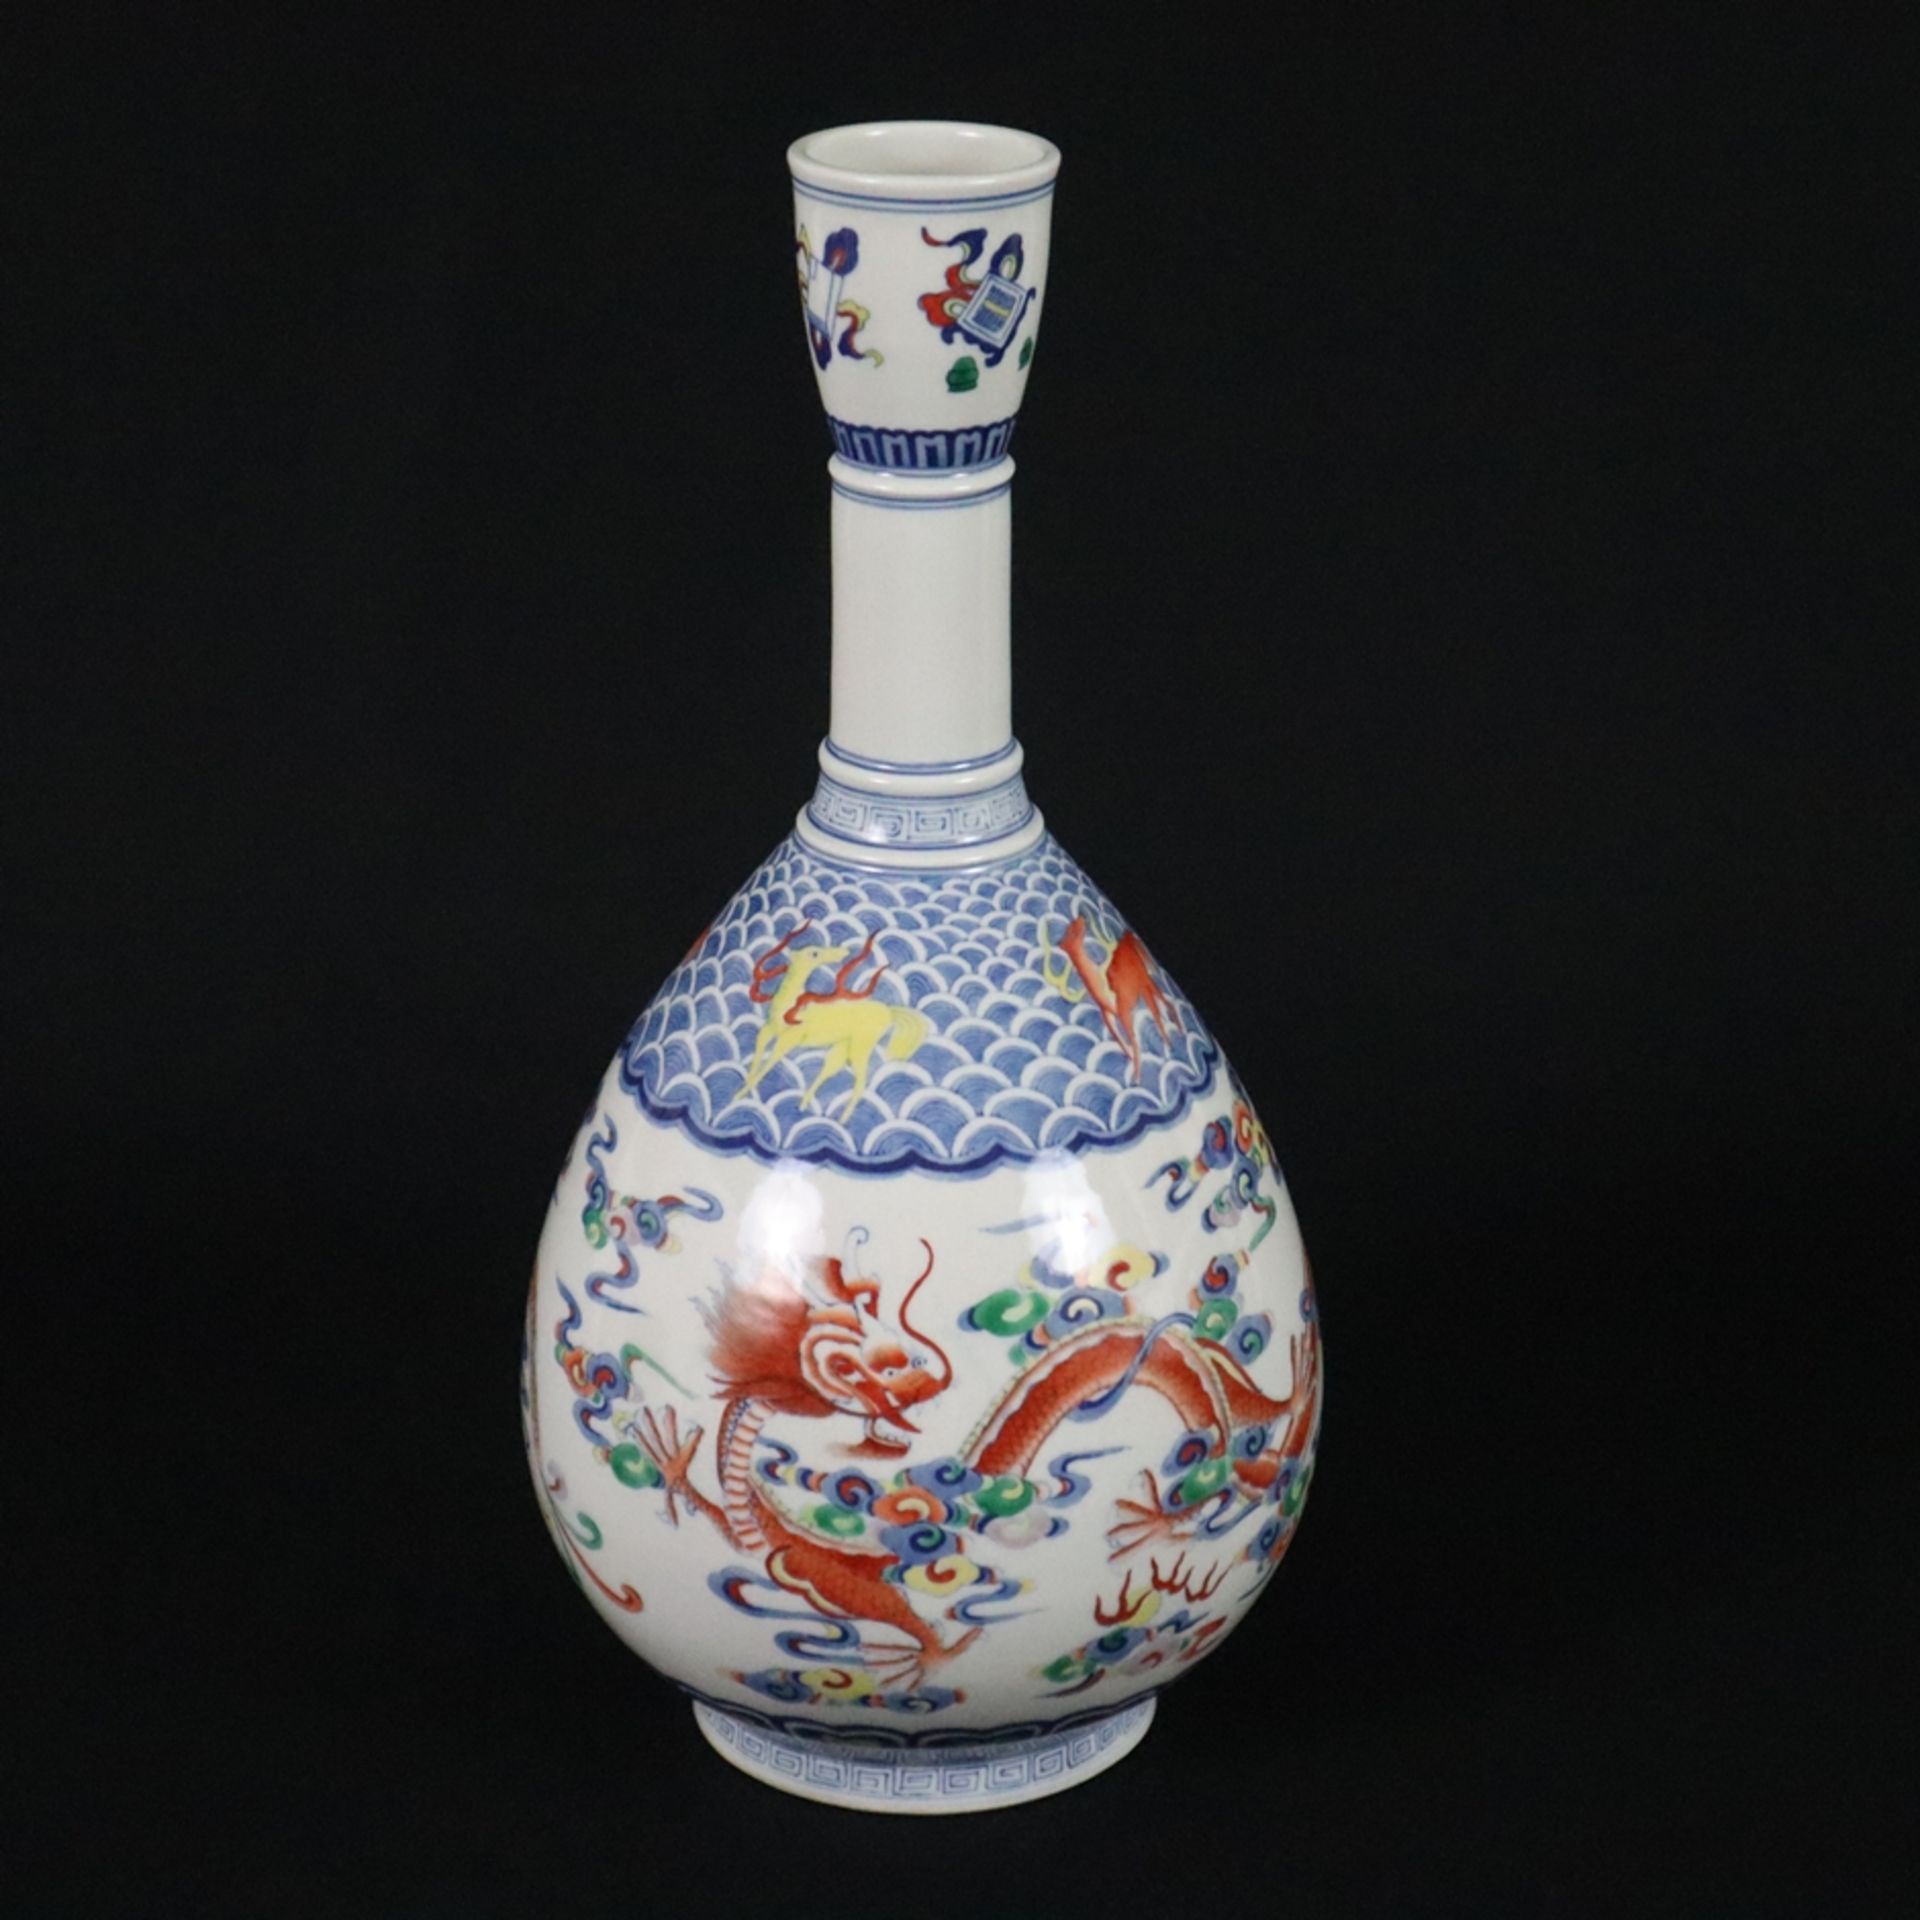 Drachenvase - China 20.Jh., Porzellan, über Standring birnförmige mit langem Hals und leicht einges